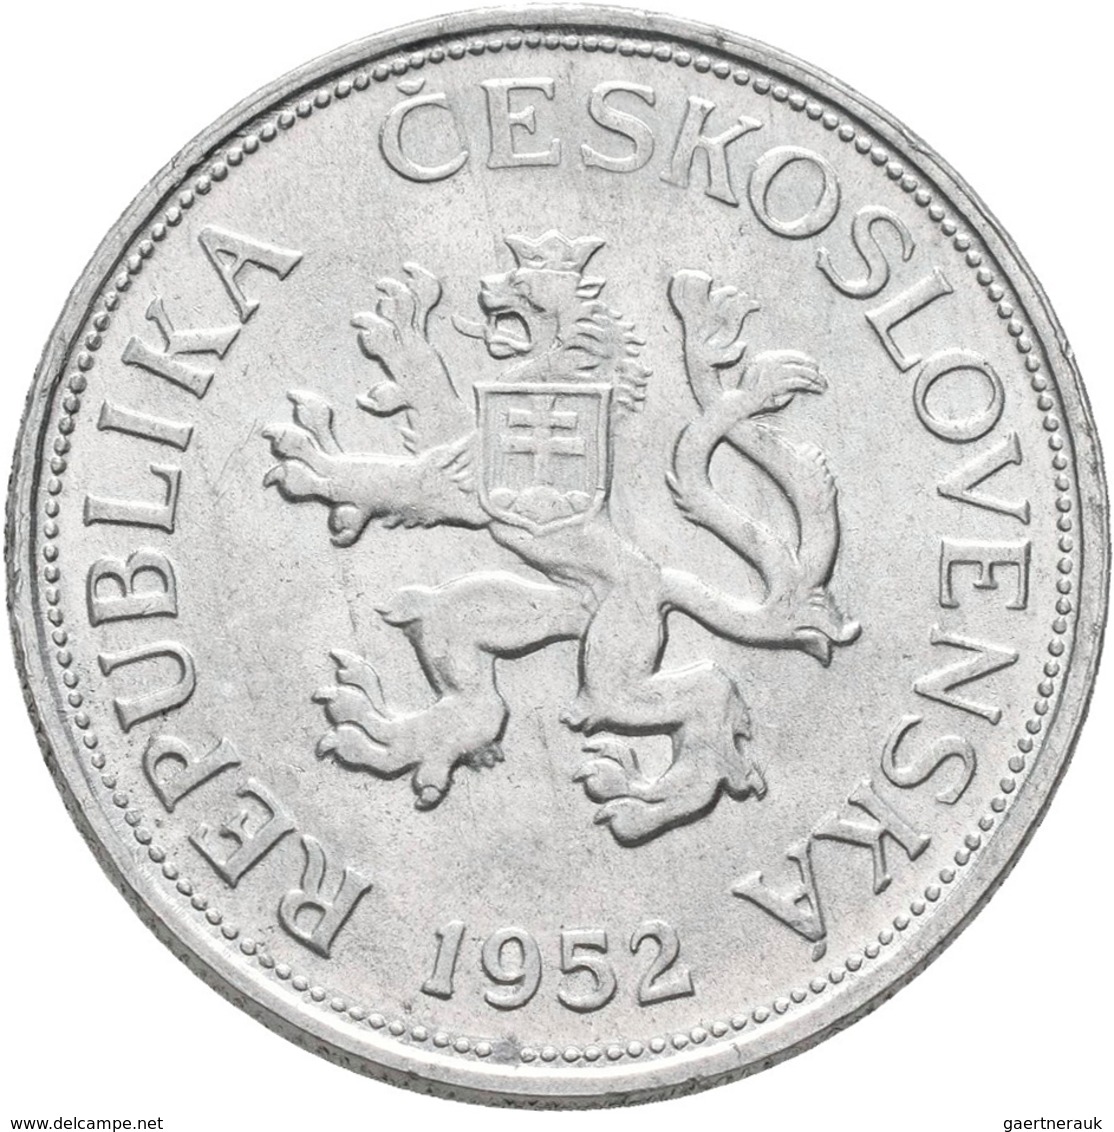 Tschechoslowakei: 5 Kcs 1952 RR !, Nicht Ausgegeben, KM# 34, Novotny 42a, Aluminium, Vorzüglich. - Cecoslovacchia